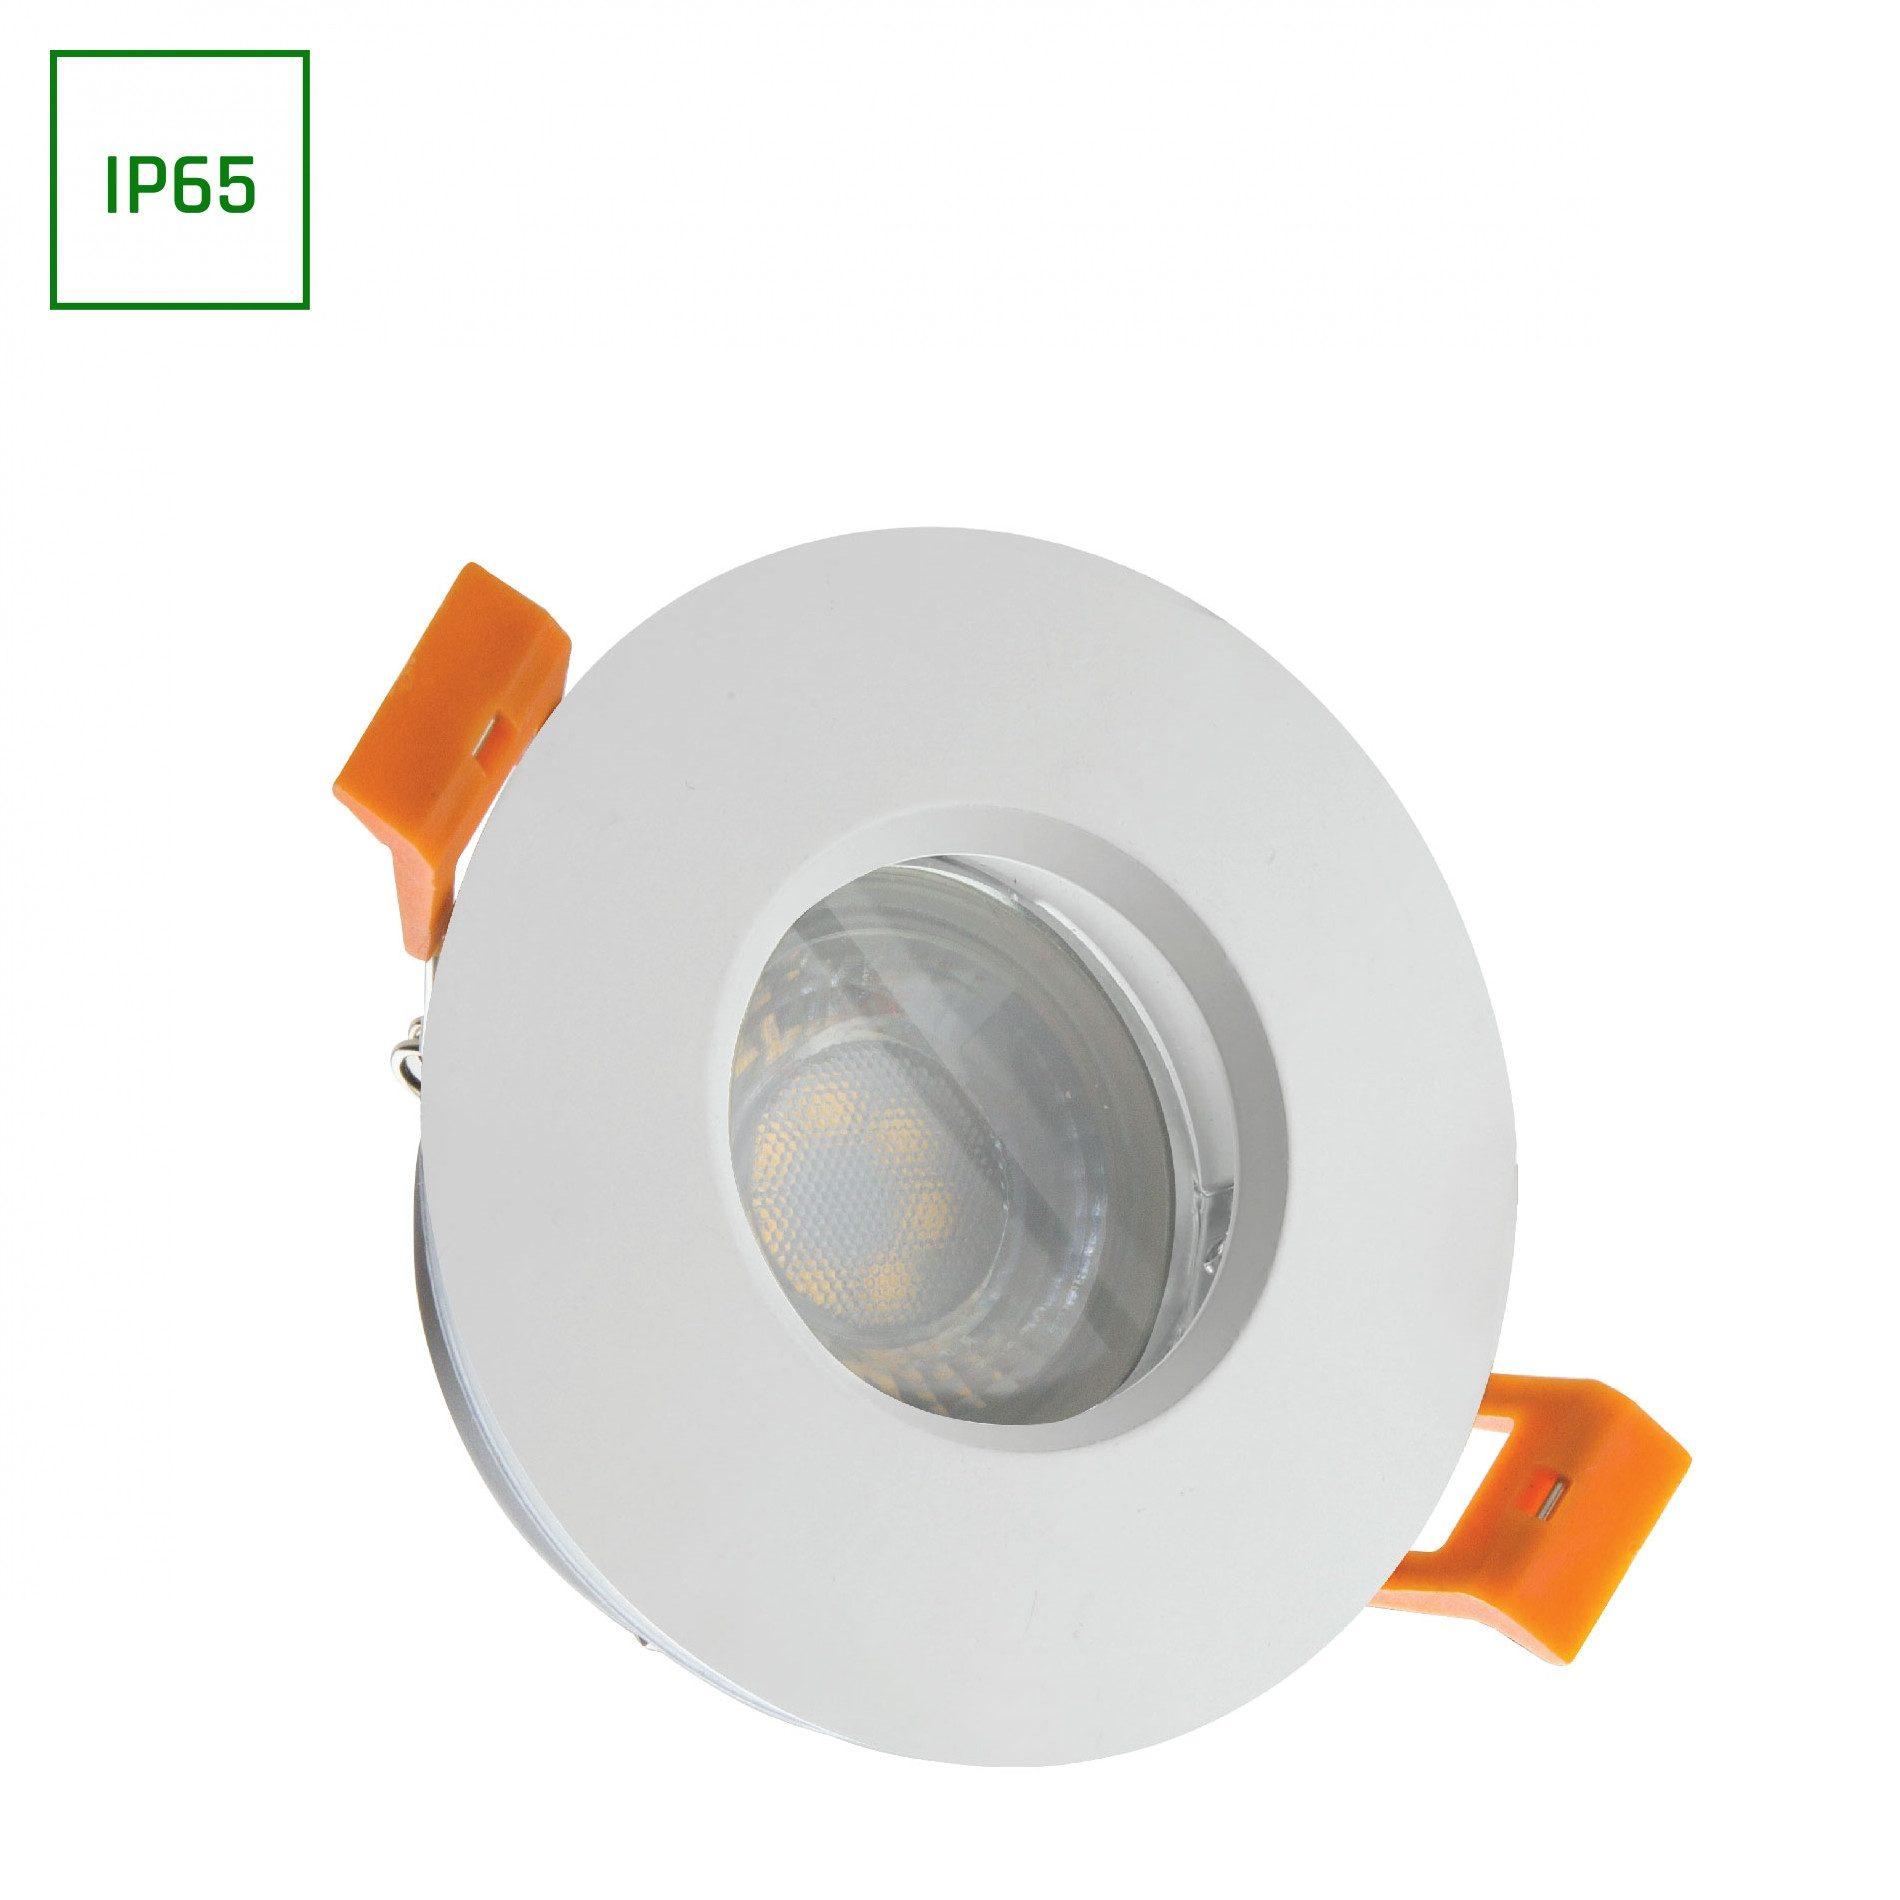 spectrum LED LED Einbaustrahler Einbaustrahler GU10 Spot Badezimmer Downlight IP65 max. 10W rund weiß, wasserdich, wasserfest, staubfest